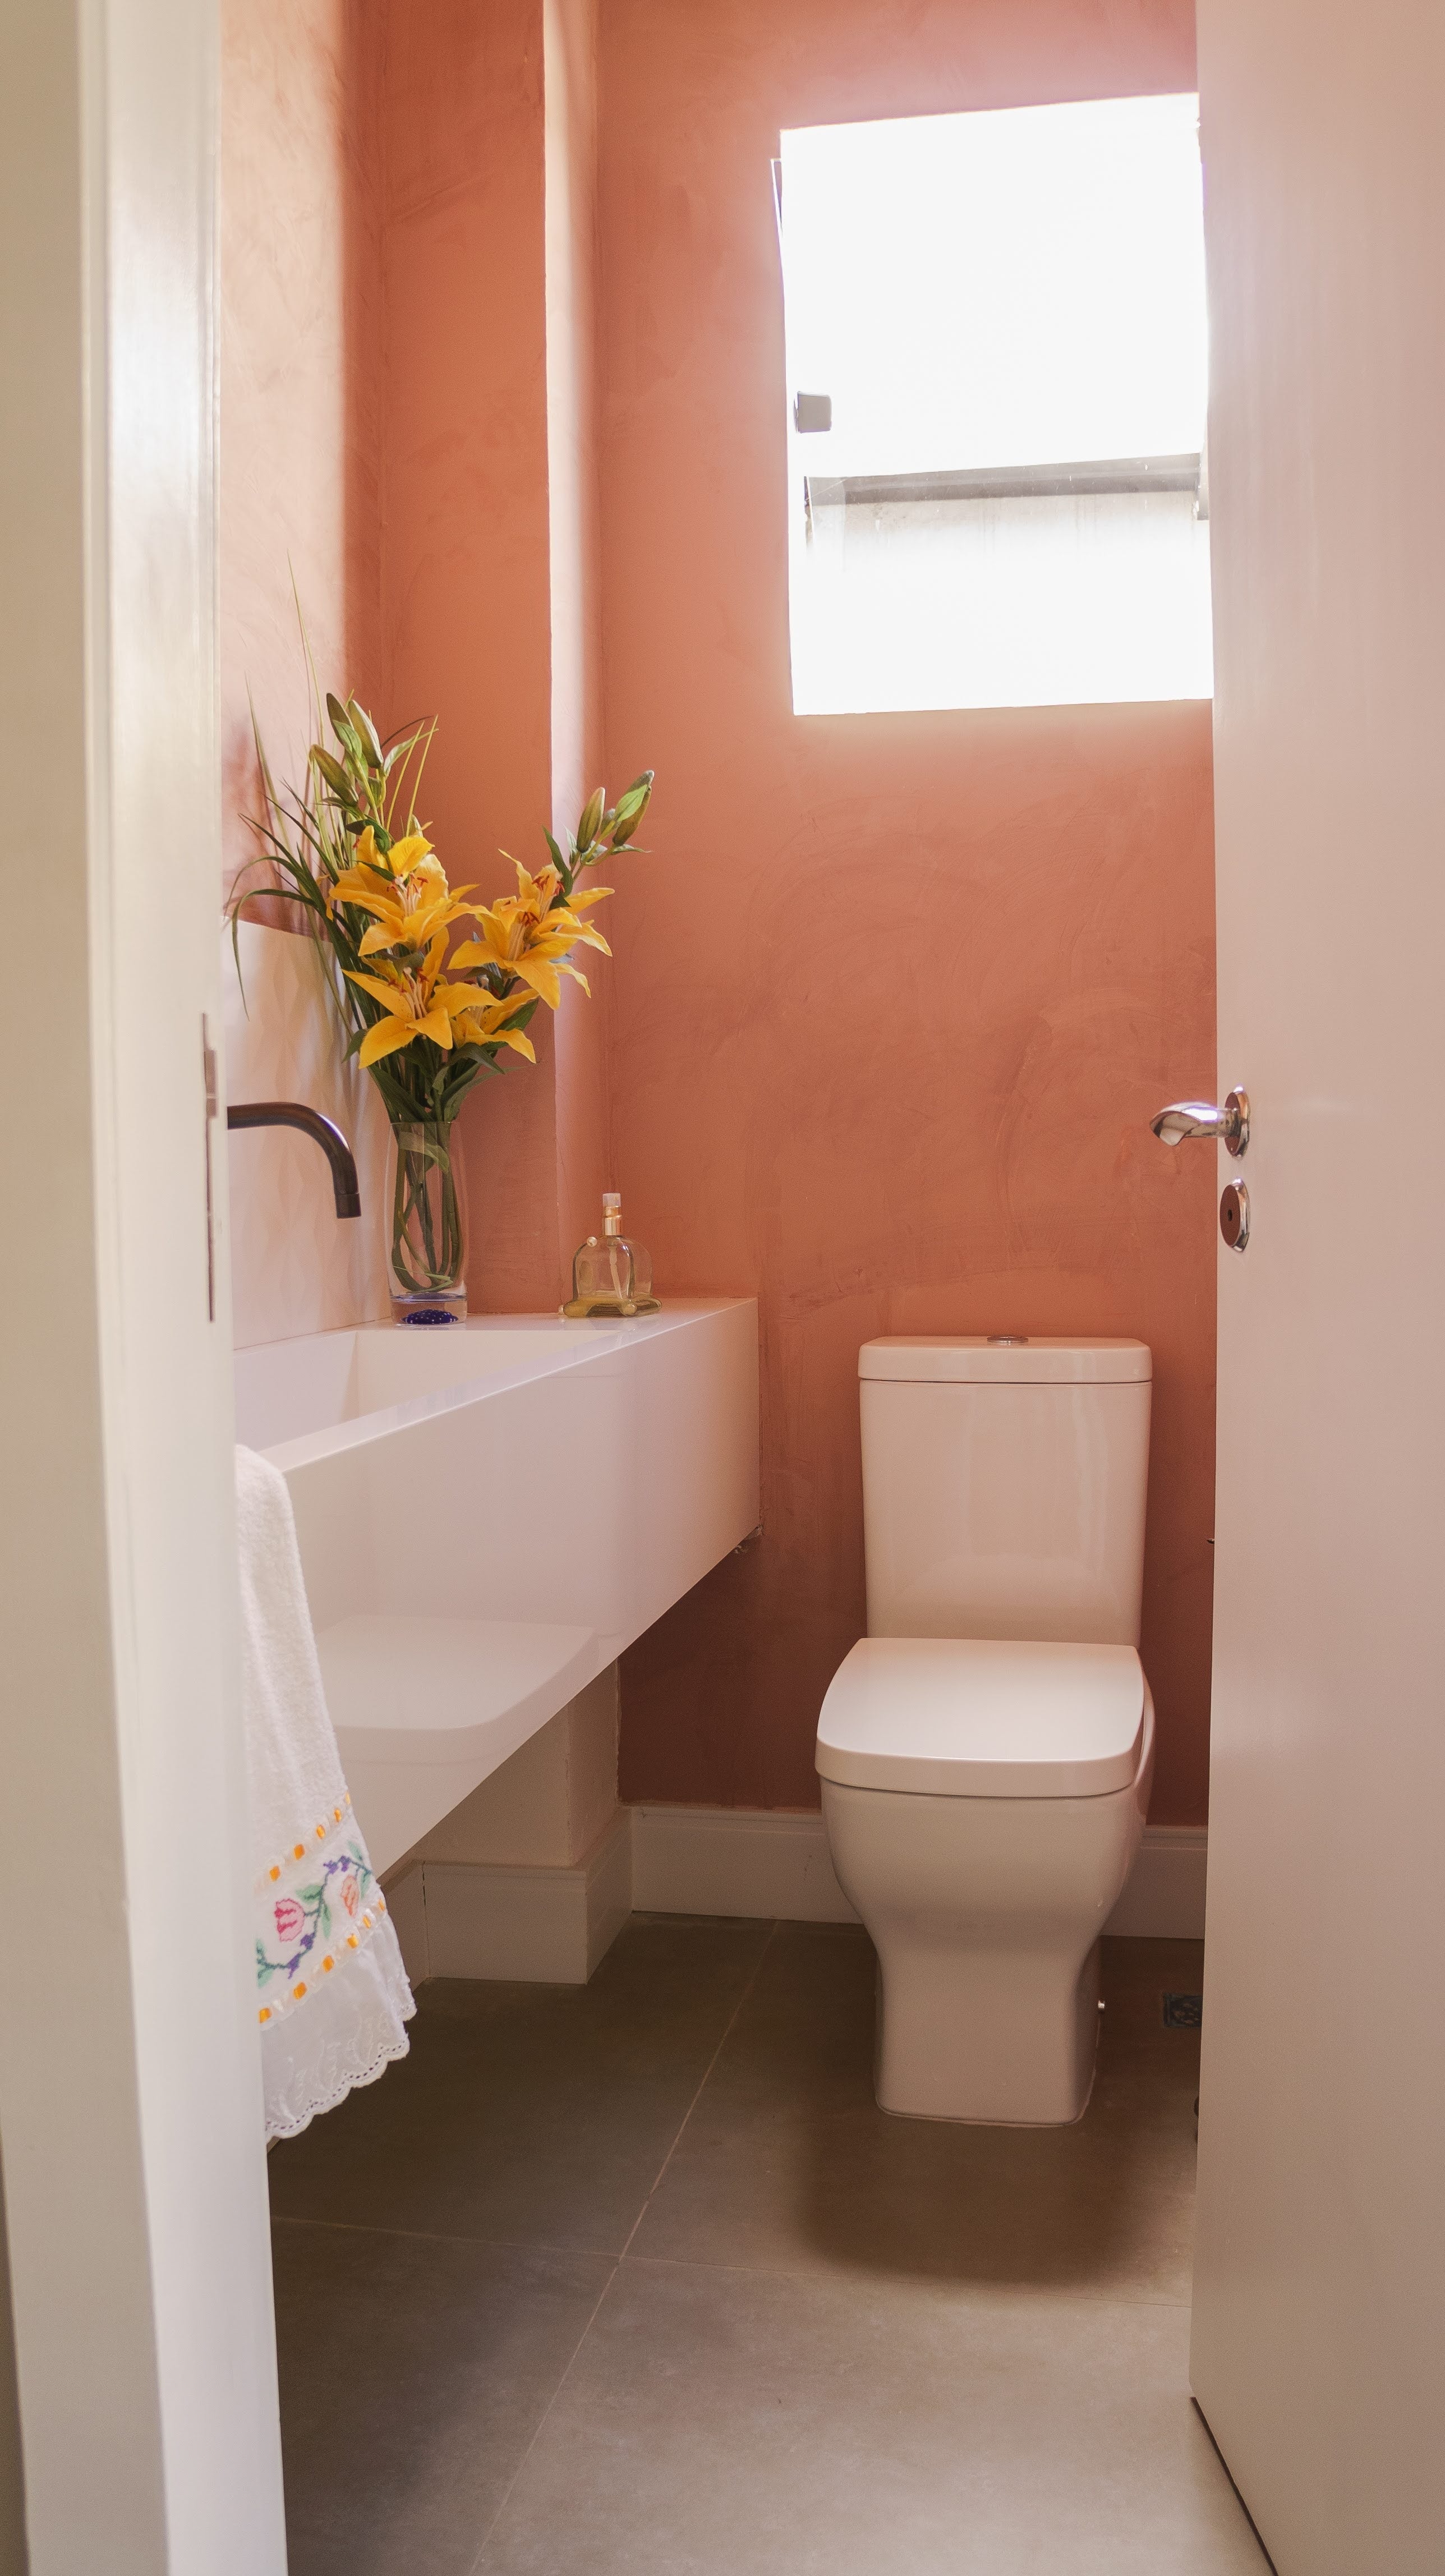 Mur coloré - Décoration toilettes - Jhana